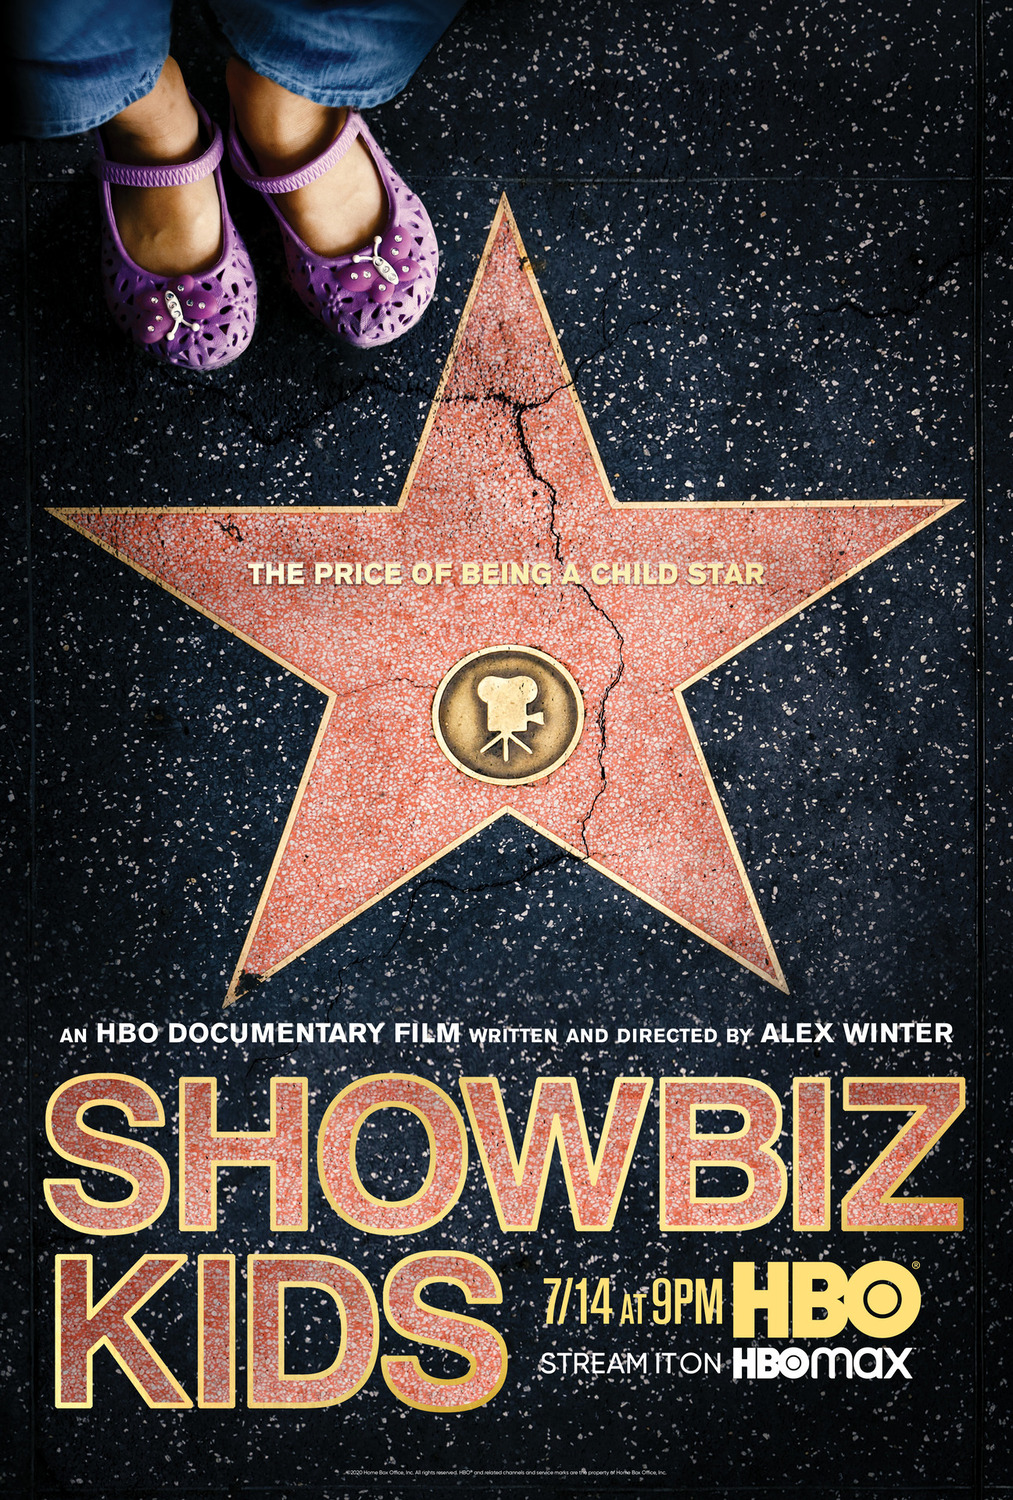 Extra Large TV Poster Image for Showbiz Kids 